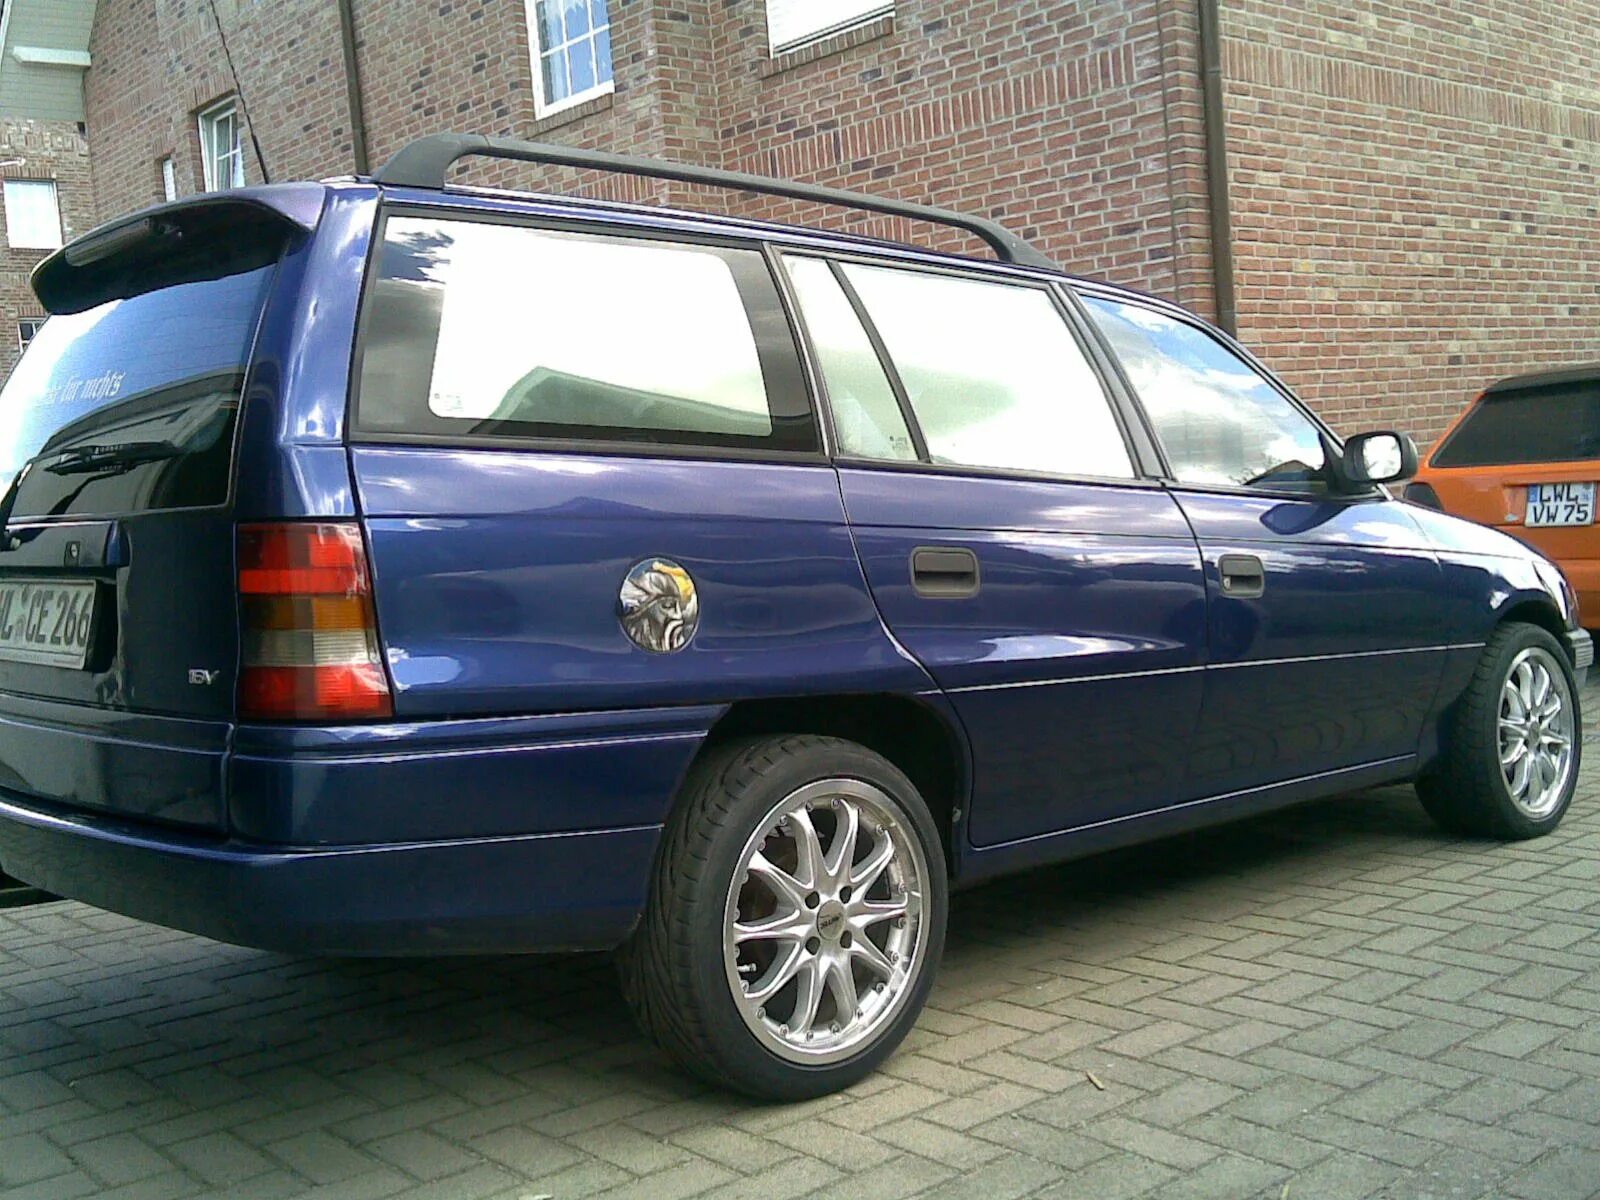 Opel Astra Caravan универсал 1997. Opel Astra f 1997 универсал.